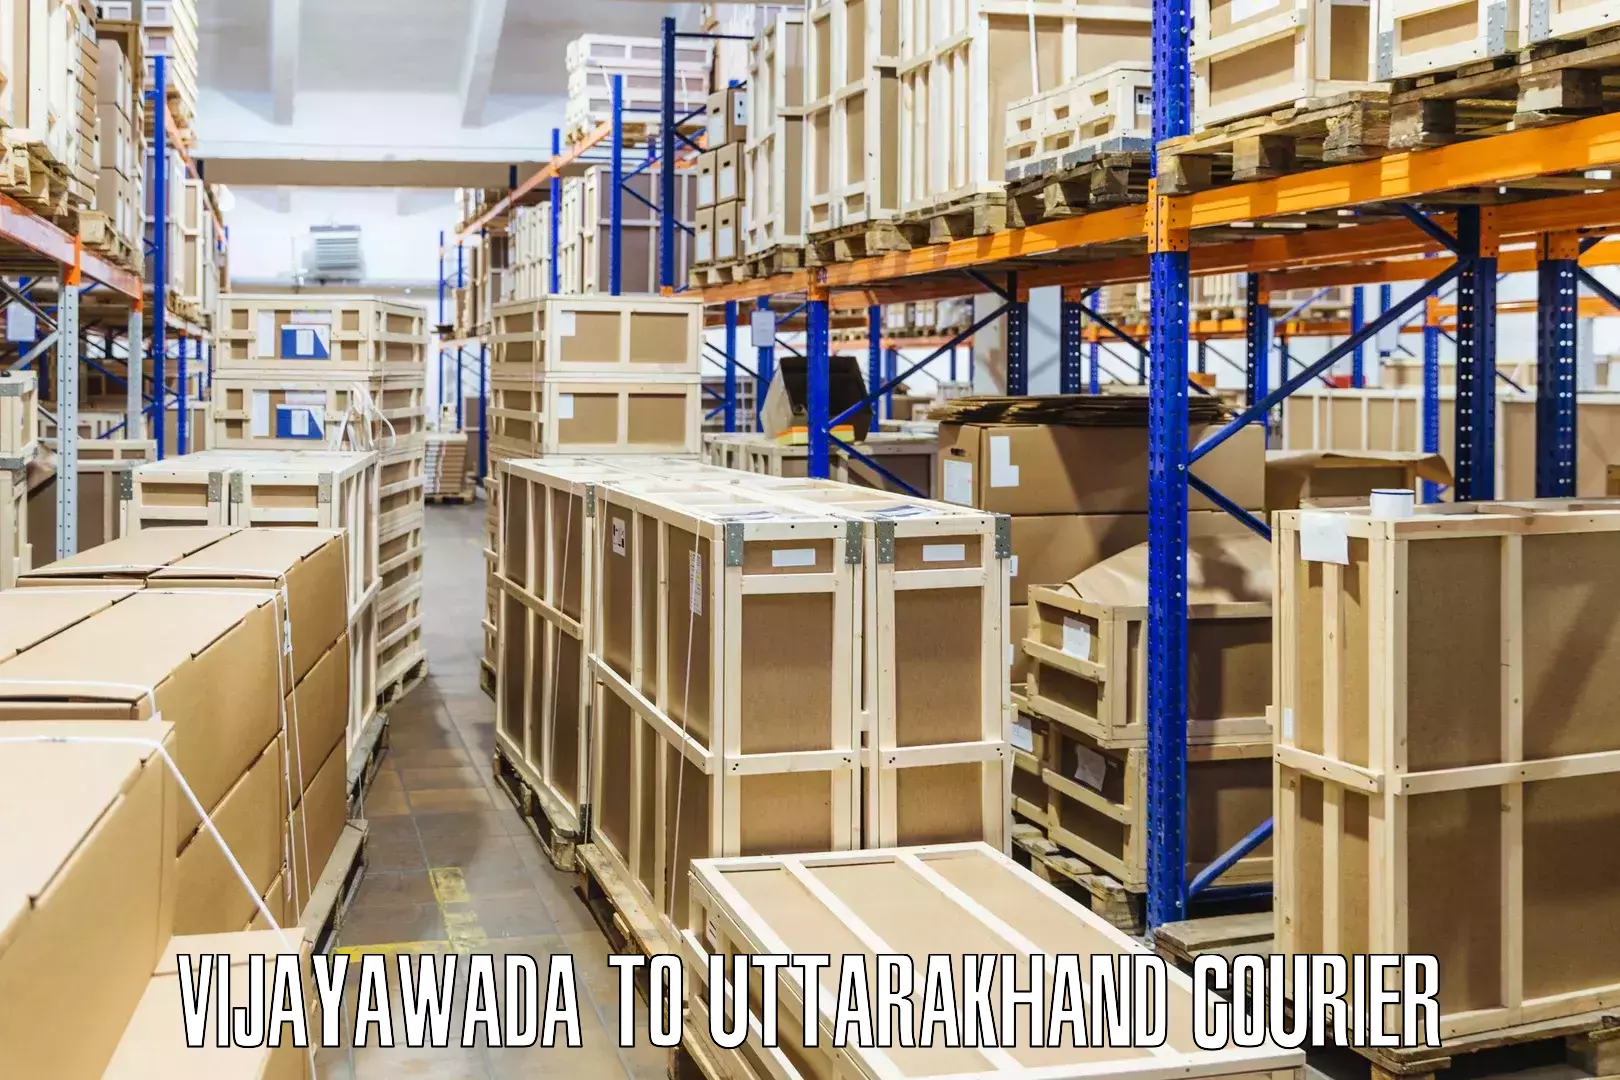 Cost-effective courier options Vijayawada to IIT Roorkee